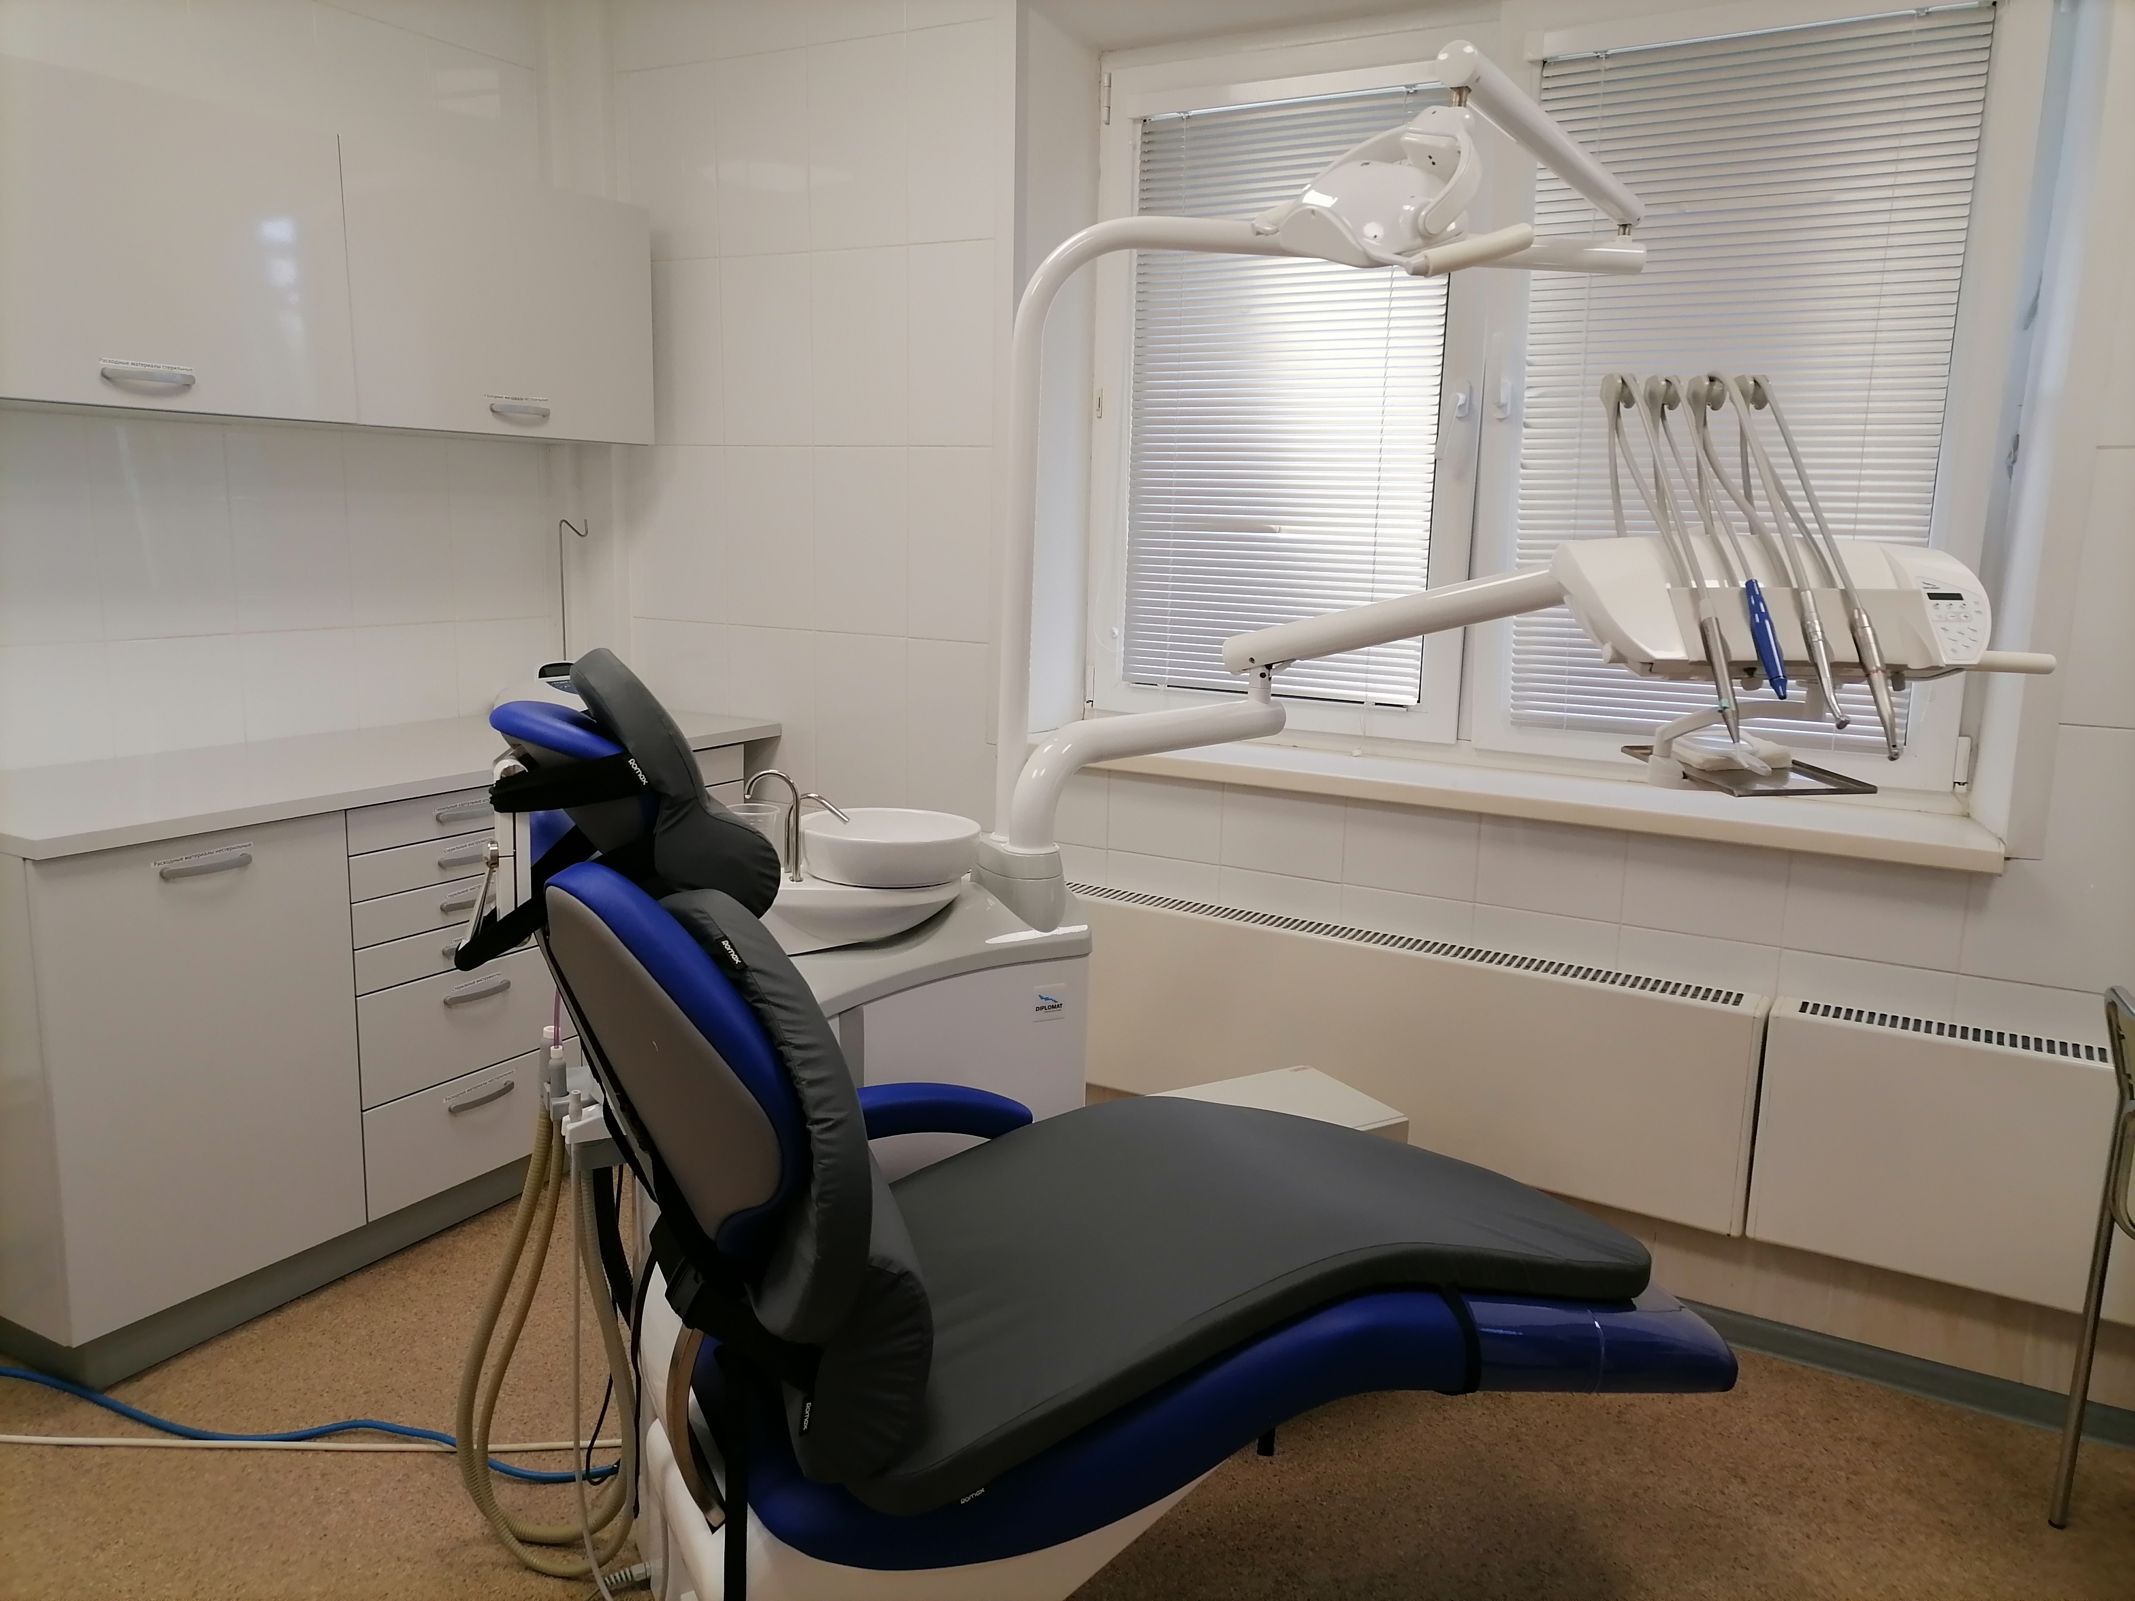 Ярославская стоматологическая клиника получила господдержку на развитие